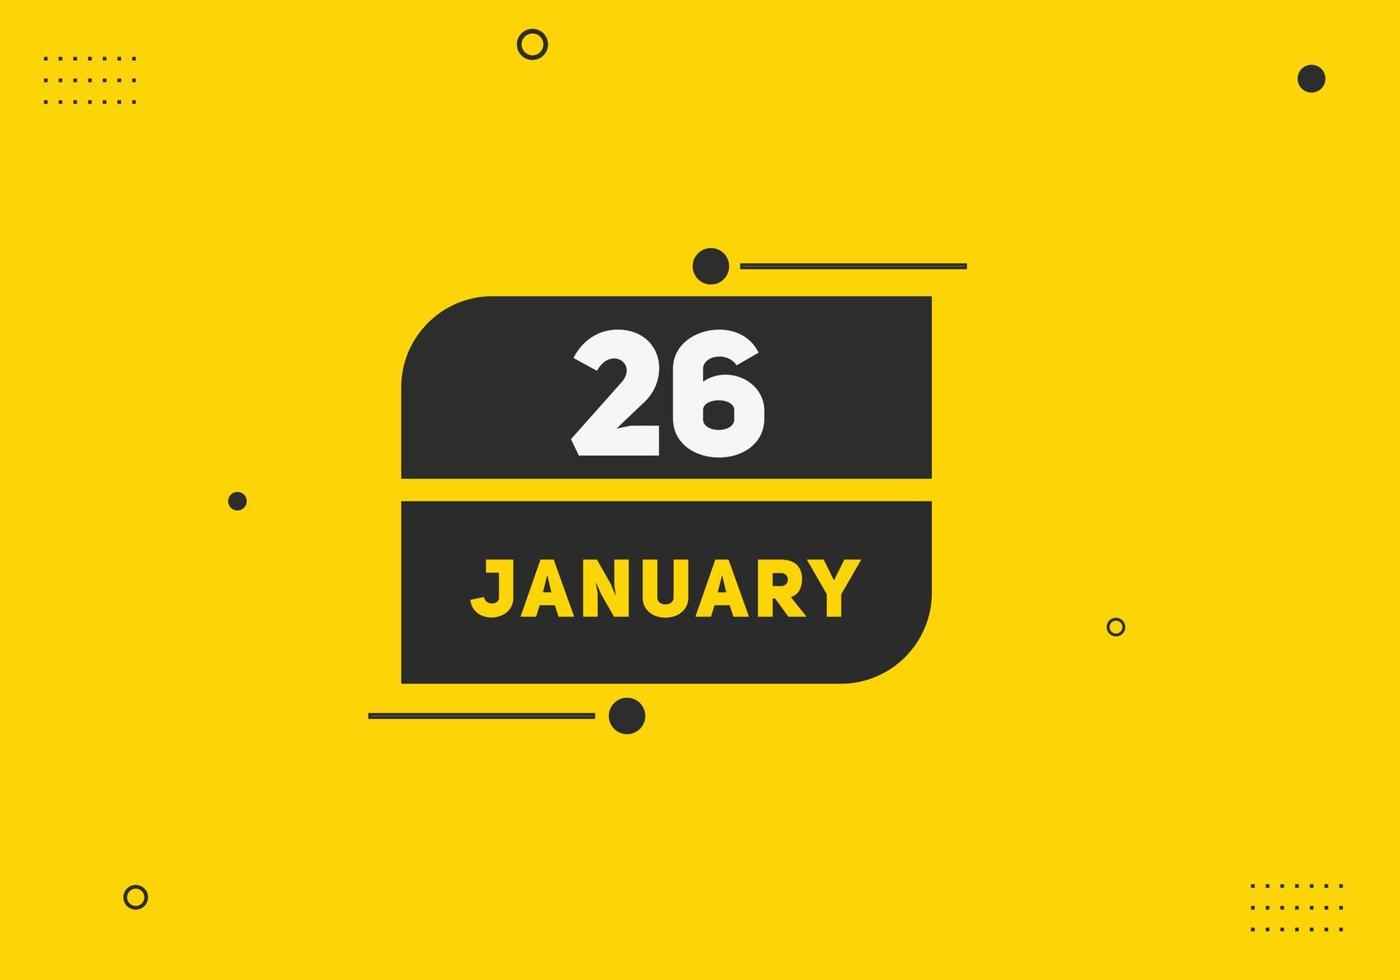 lembrete de calendário de 26 de janeiro. 26 de janeiro modelo de ícone de calendário diário. modelo de design de ícone de calendário 26 de janeiro. ilustração vetorial vetor